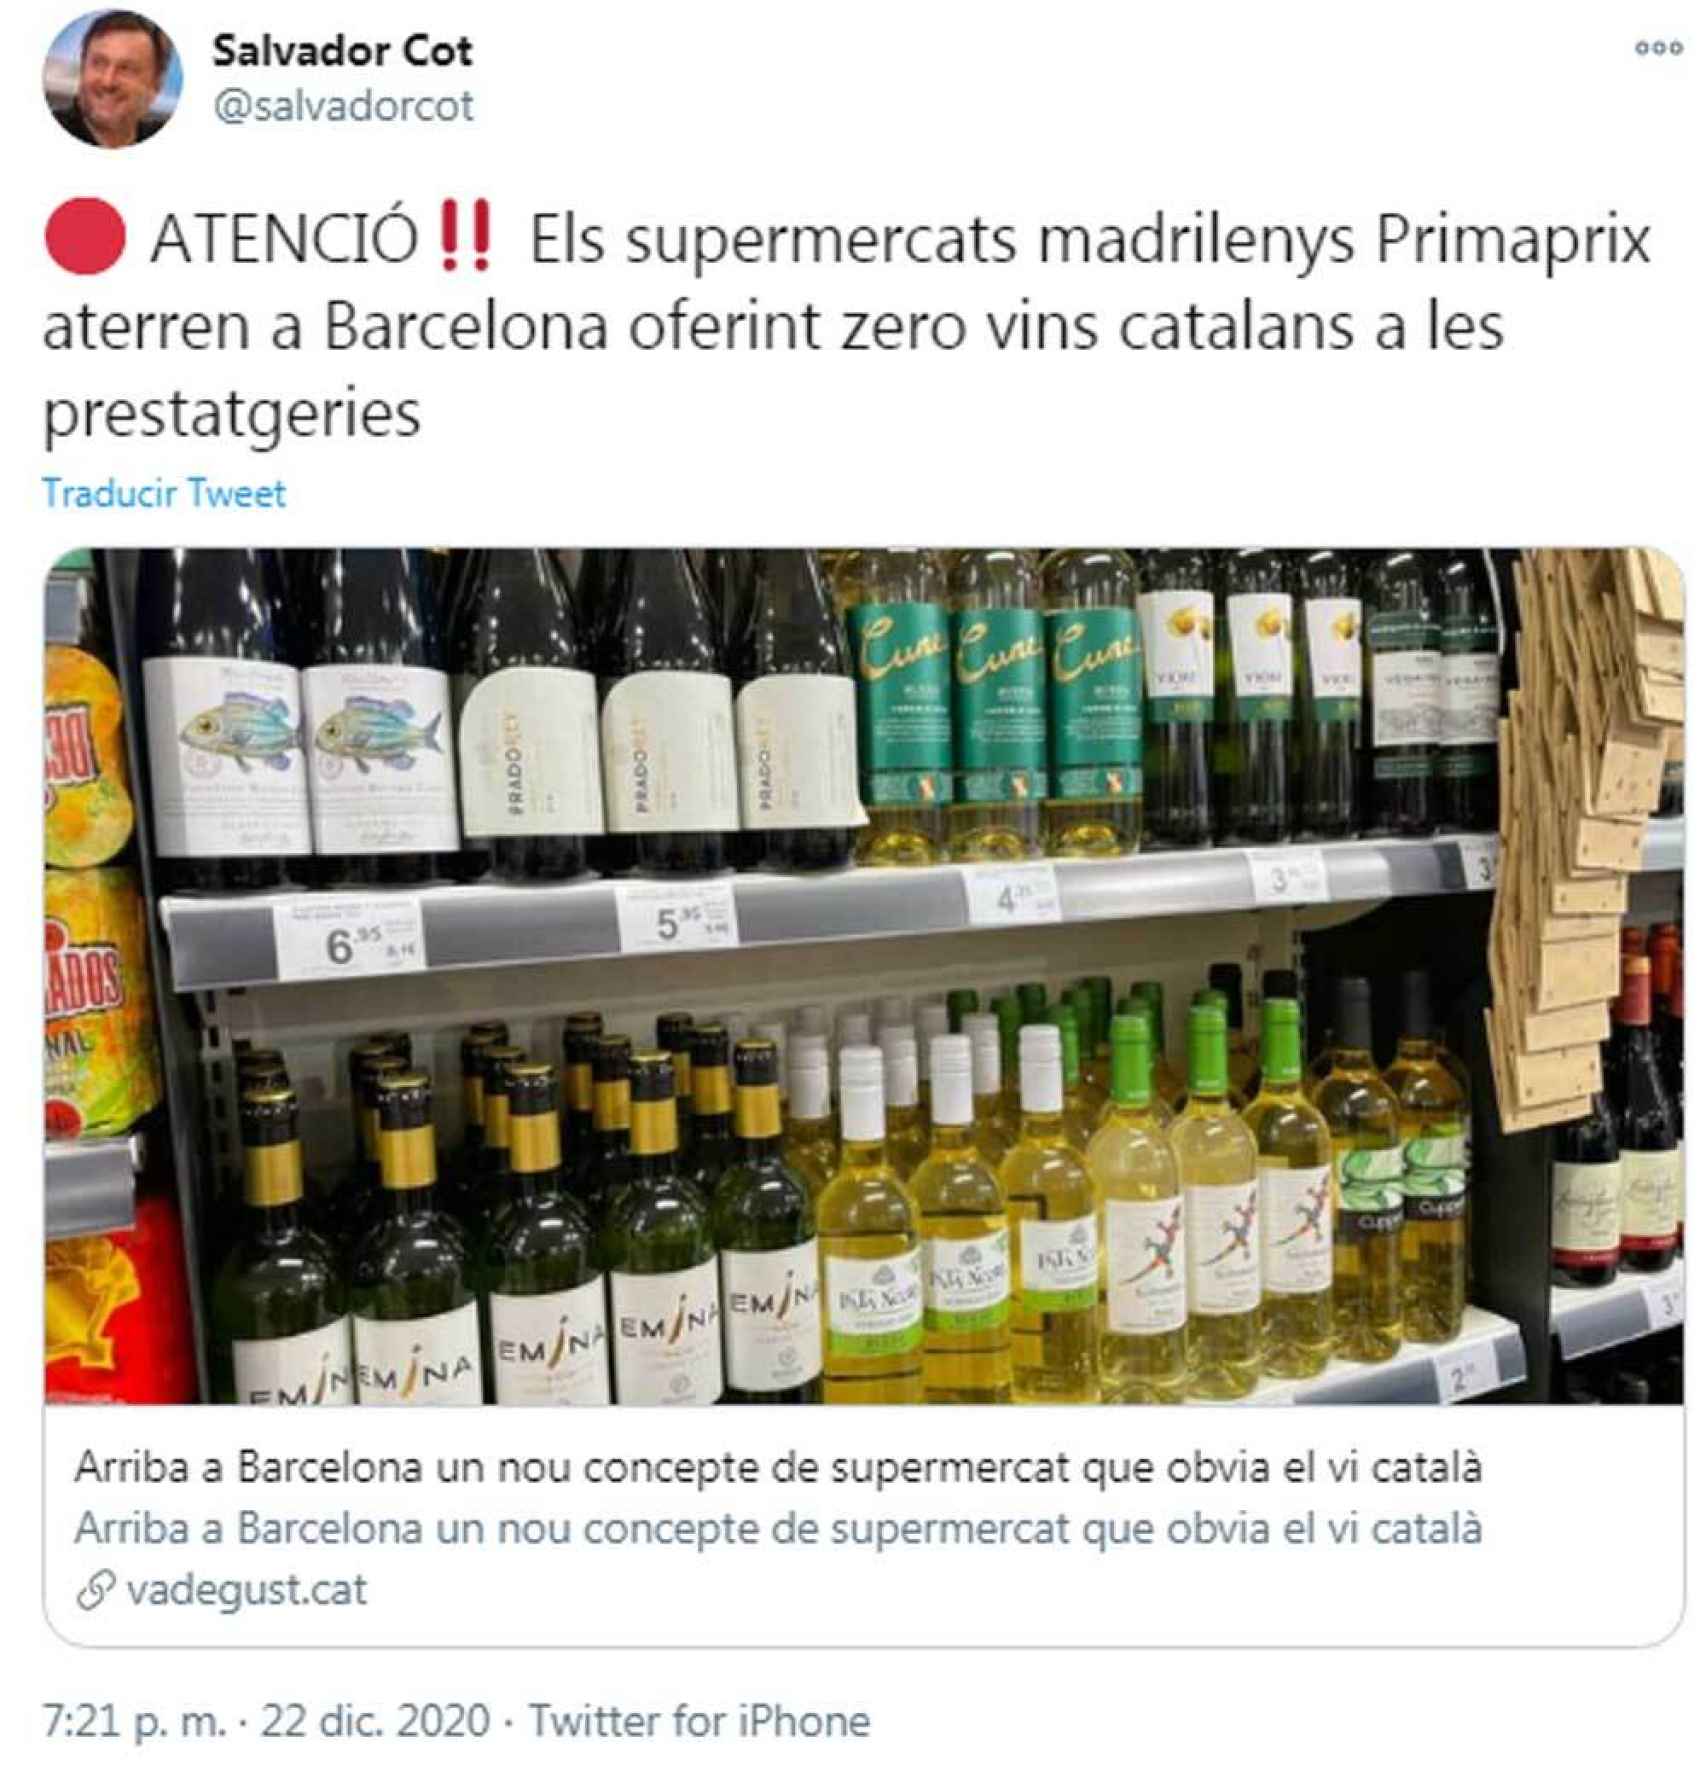 Salvador Cot señala en Twitter al establecimiento por no disponer de vinos catalanes.